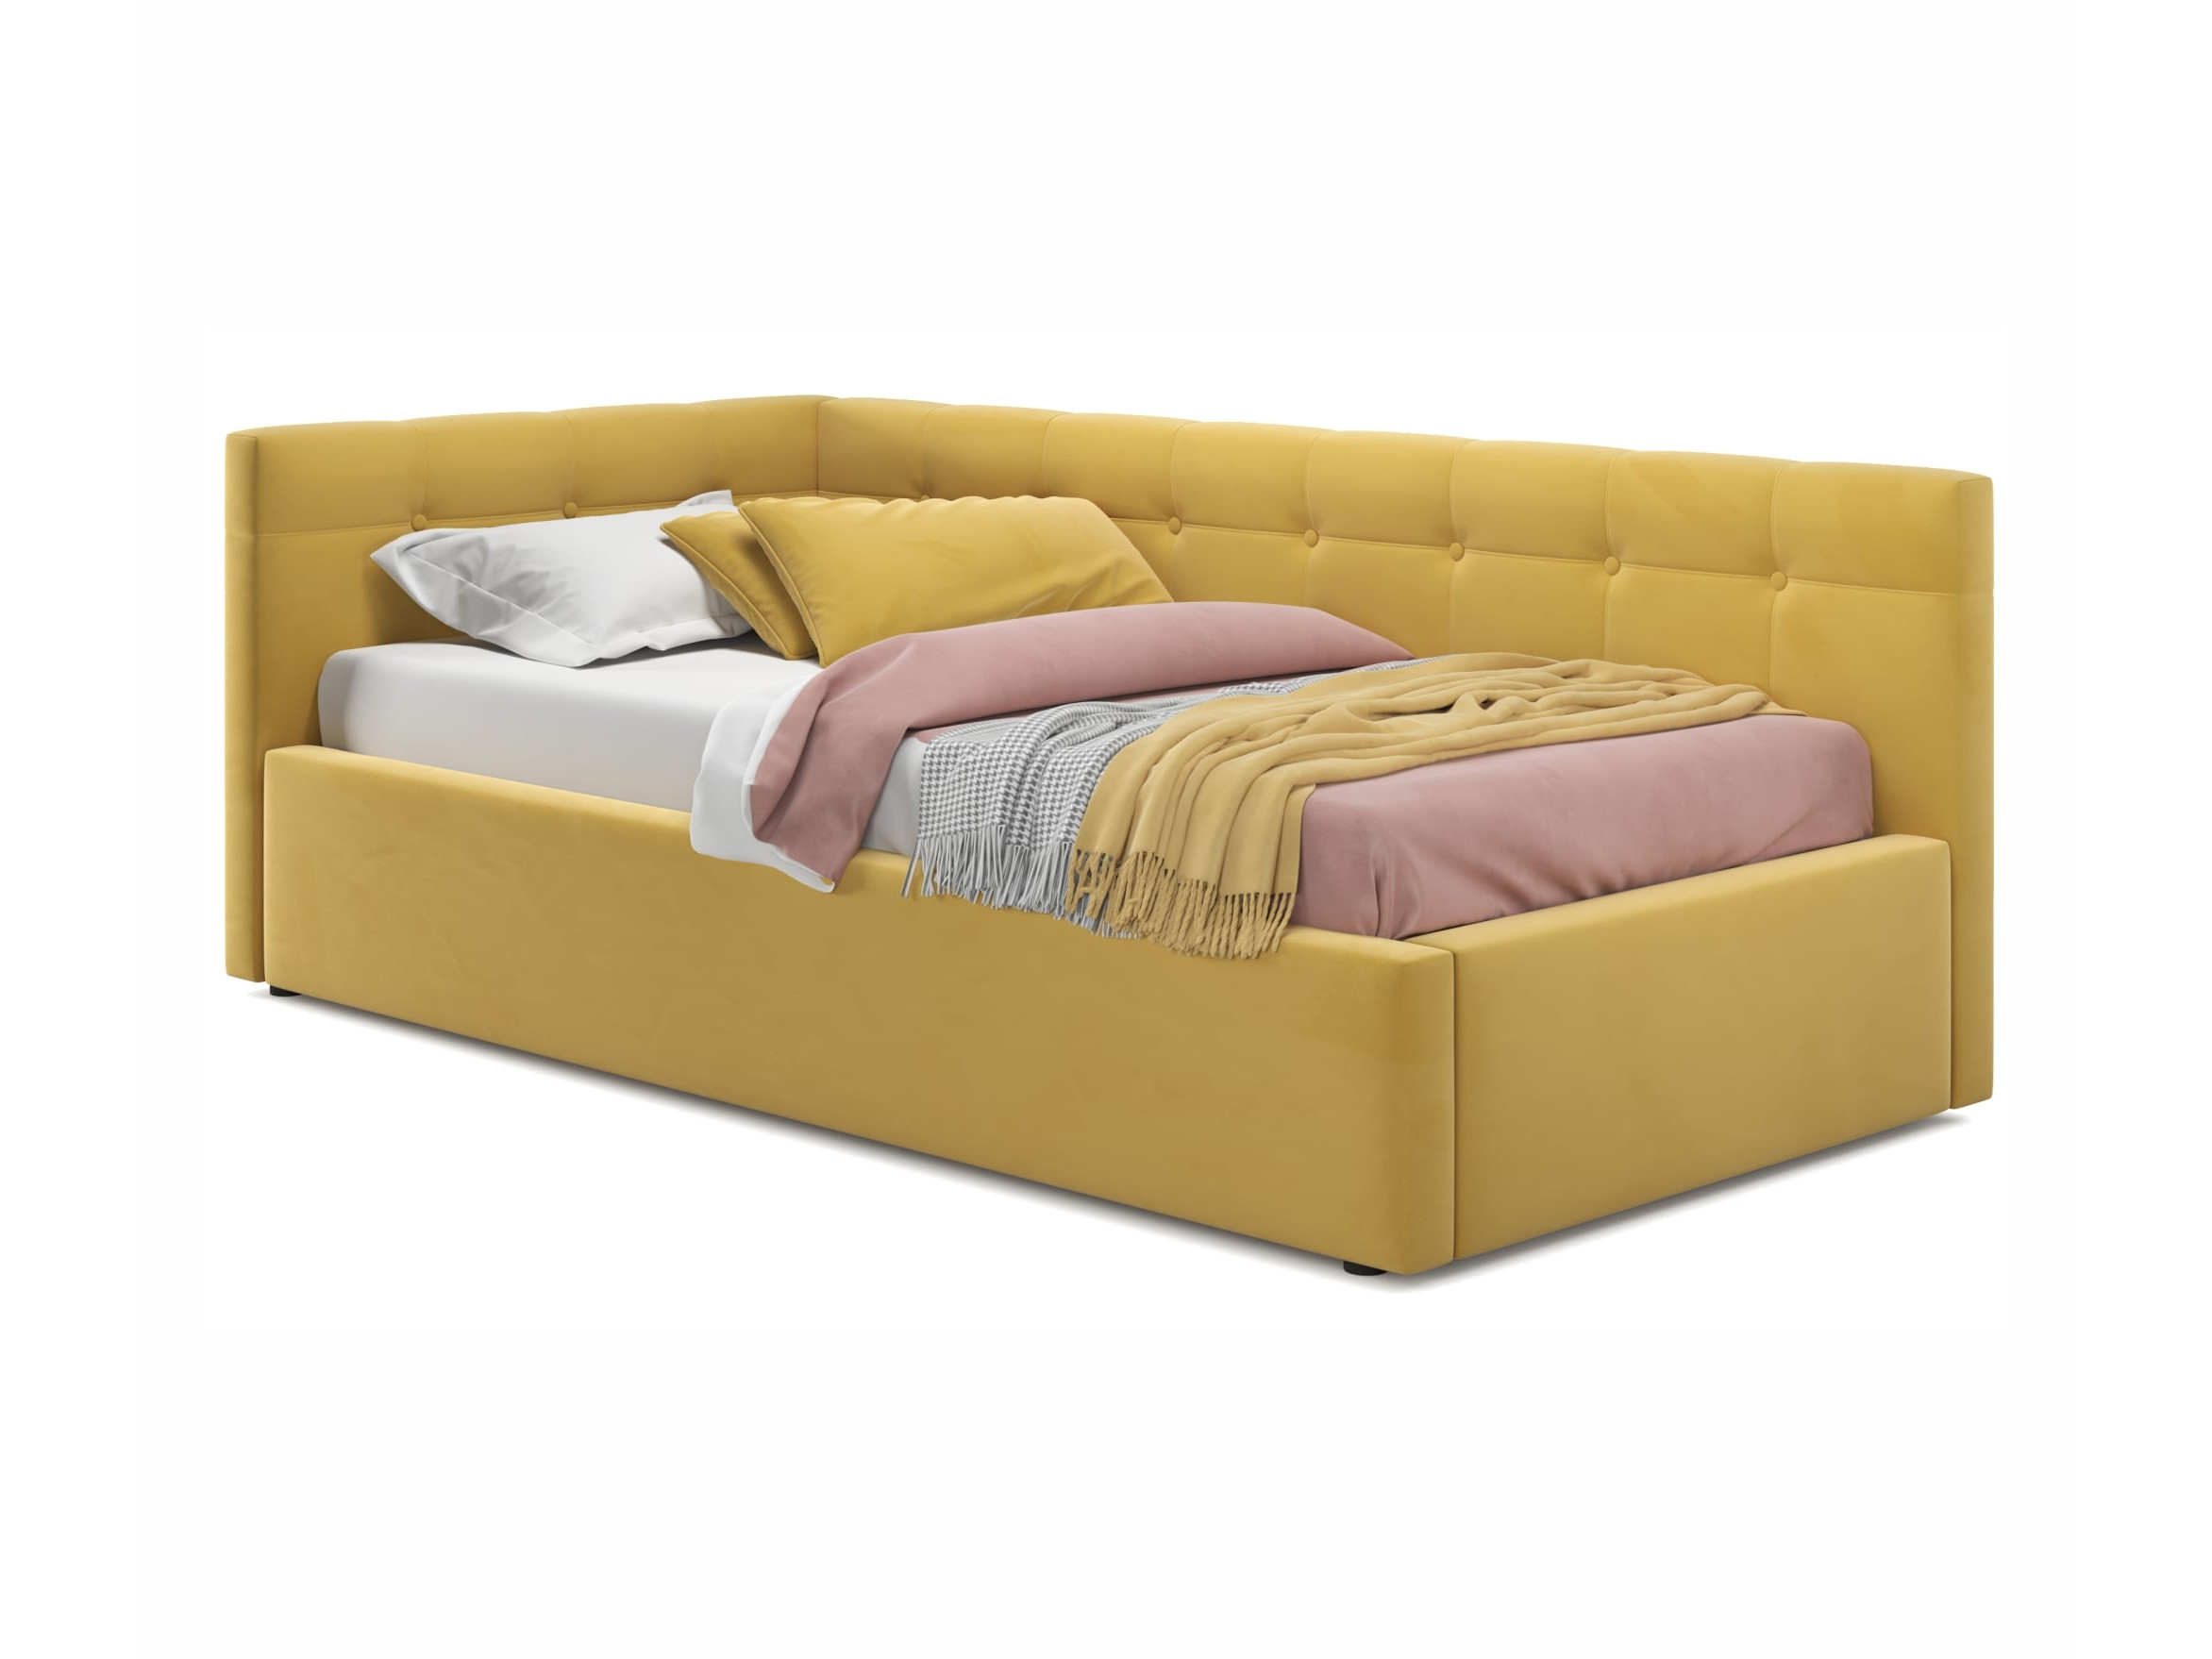 Односпальная кровать-тахта Bonna 900 желтая с подъемным механизмом желтый, Желтый, Велюр, ДСП